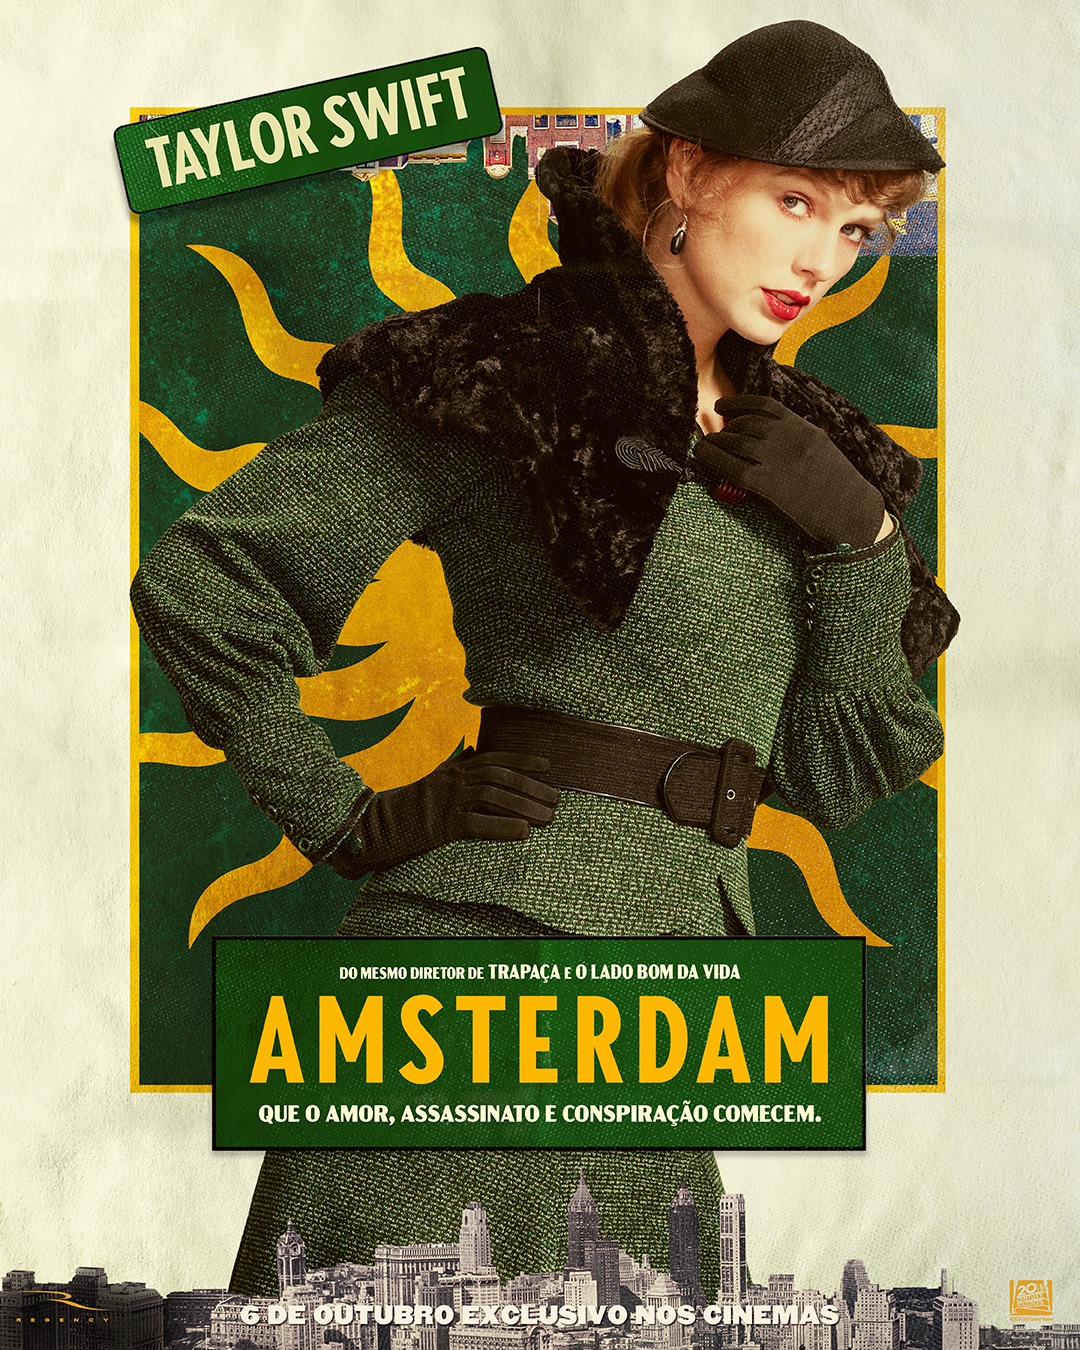 Qual o papel de Taylor Swift em "Amsterdam"?